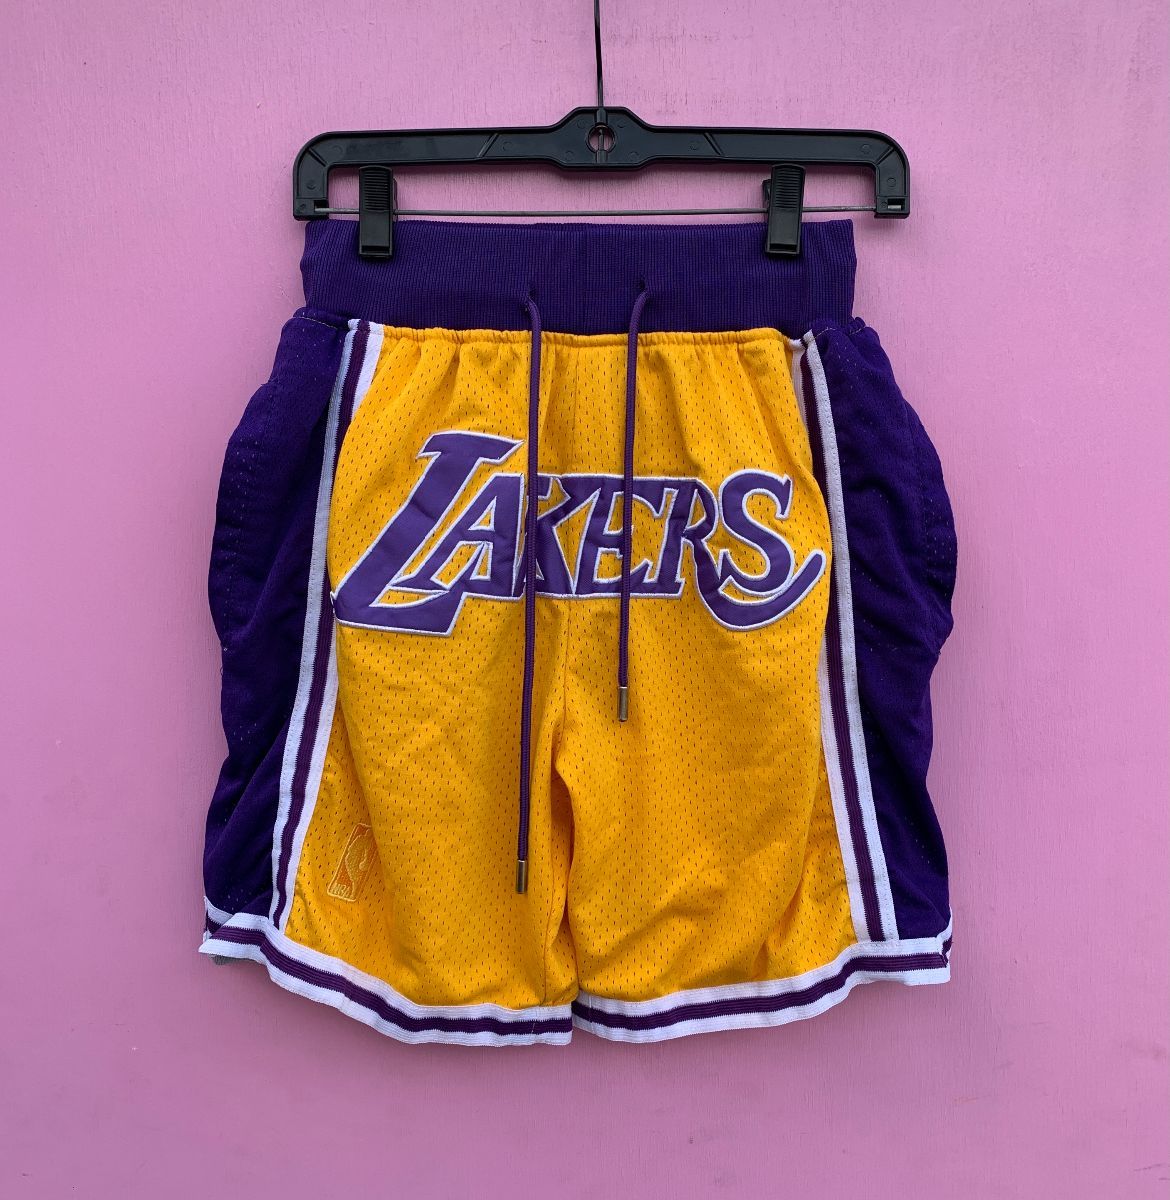 don lakers basketball shorts